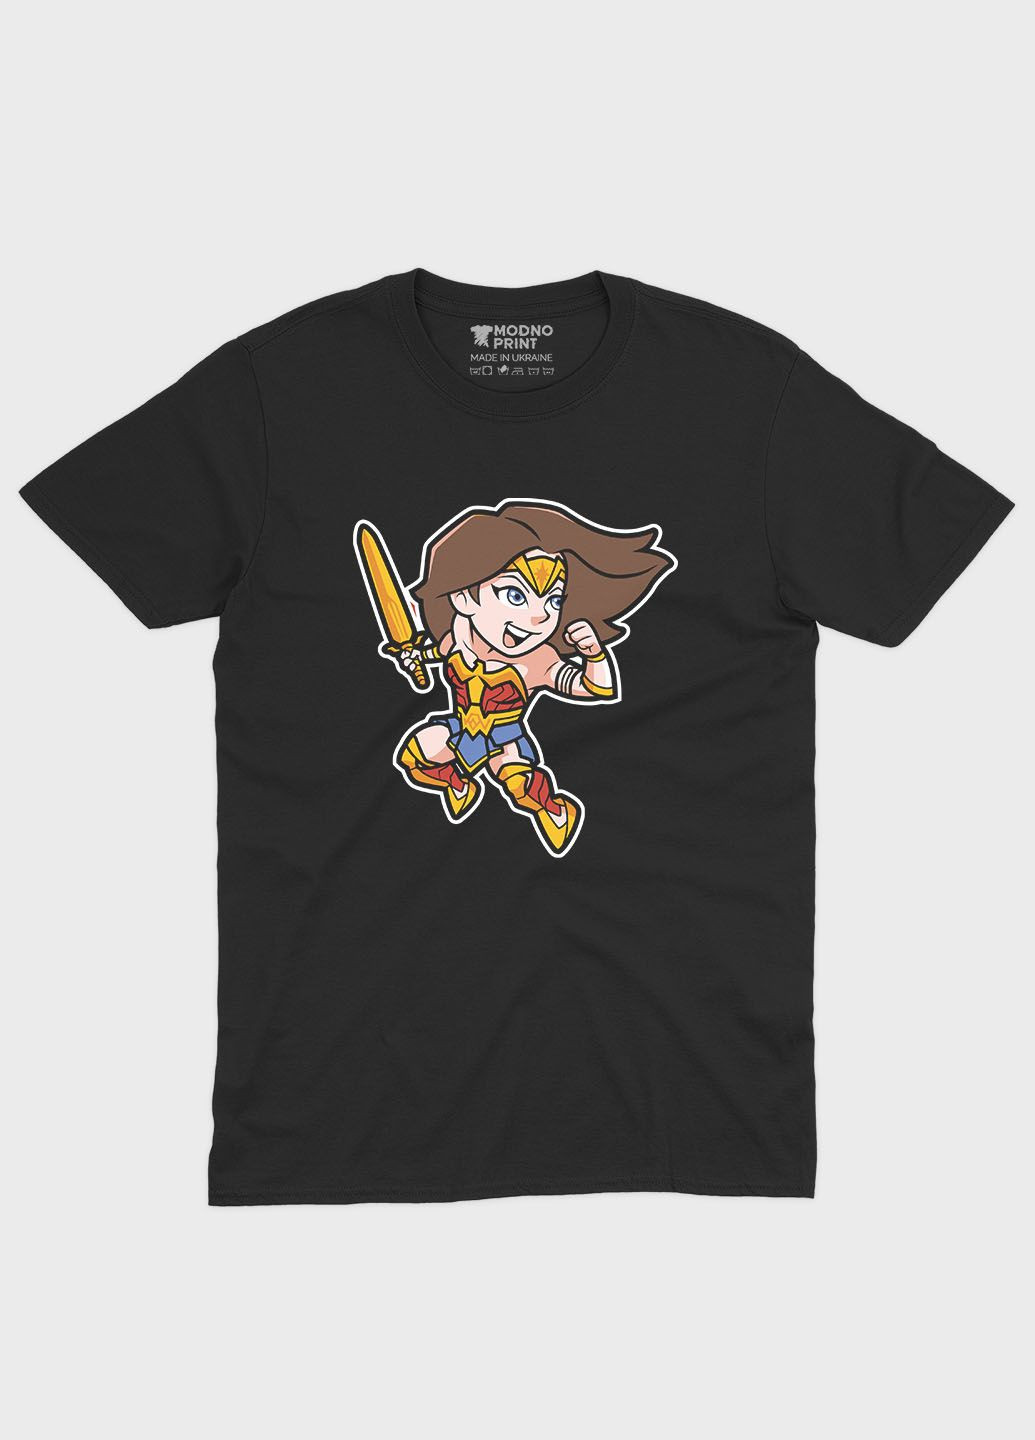 Чорна літня жіноча футболка з принтом супергероя - диво-жінка (ts001-1-bl-006-006-001-f) Modno